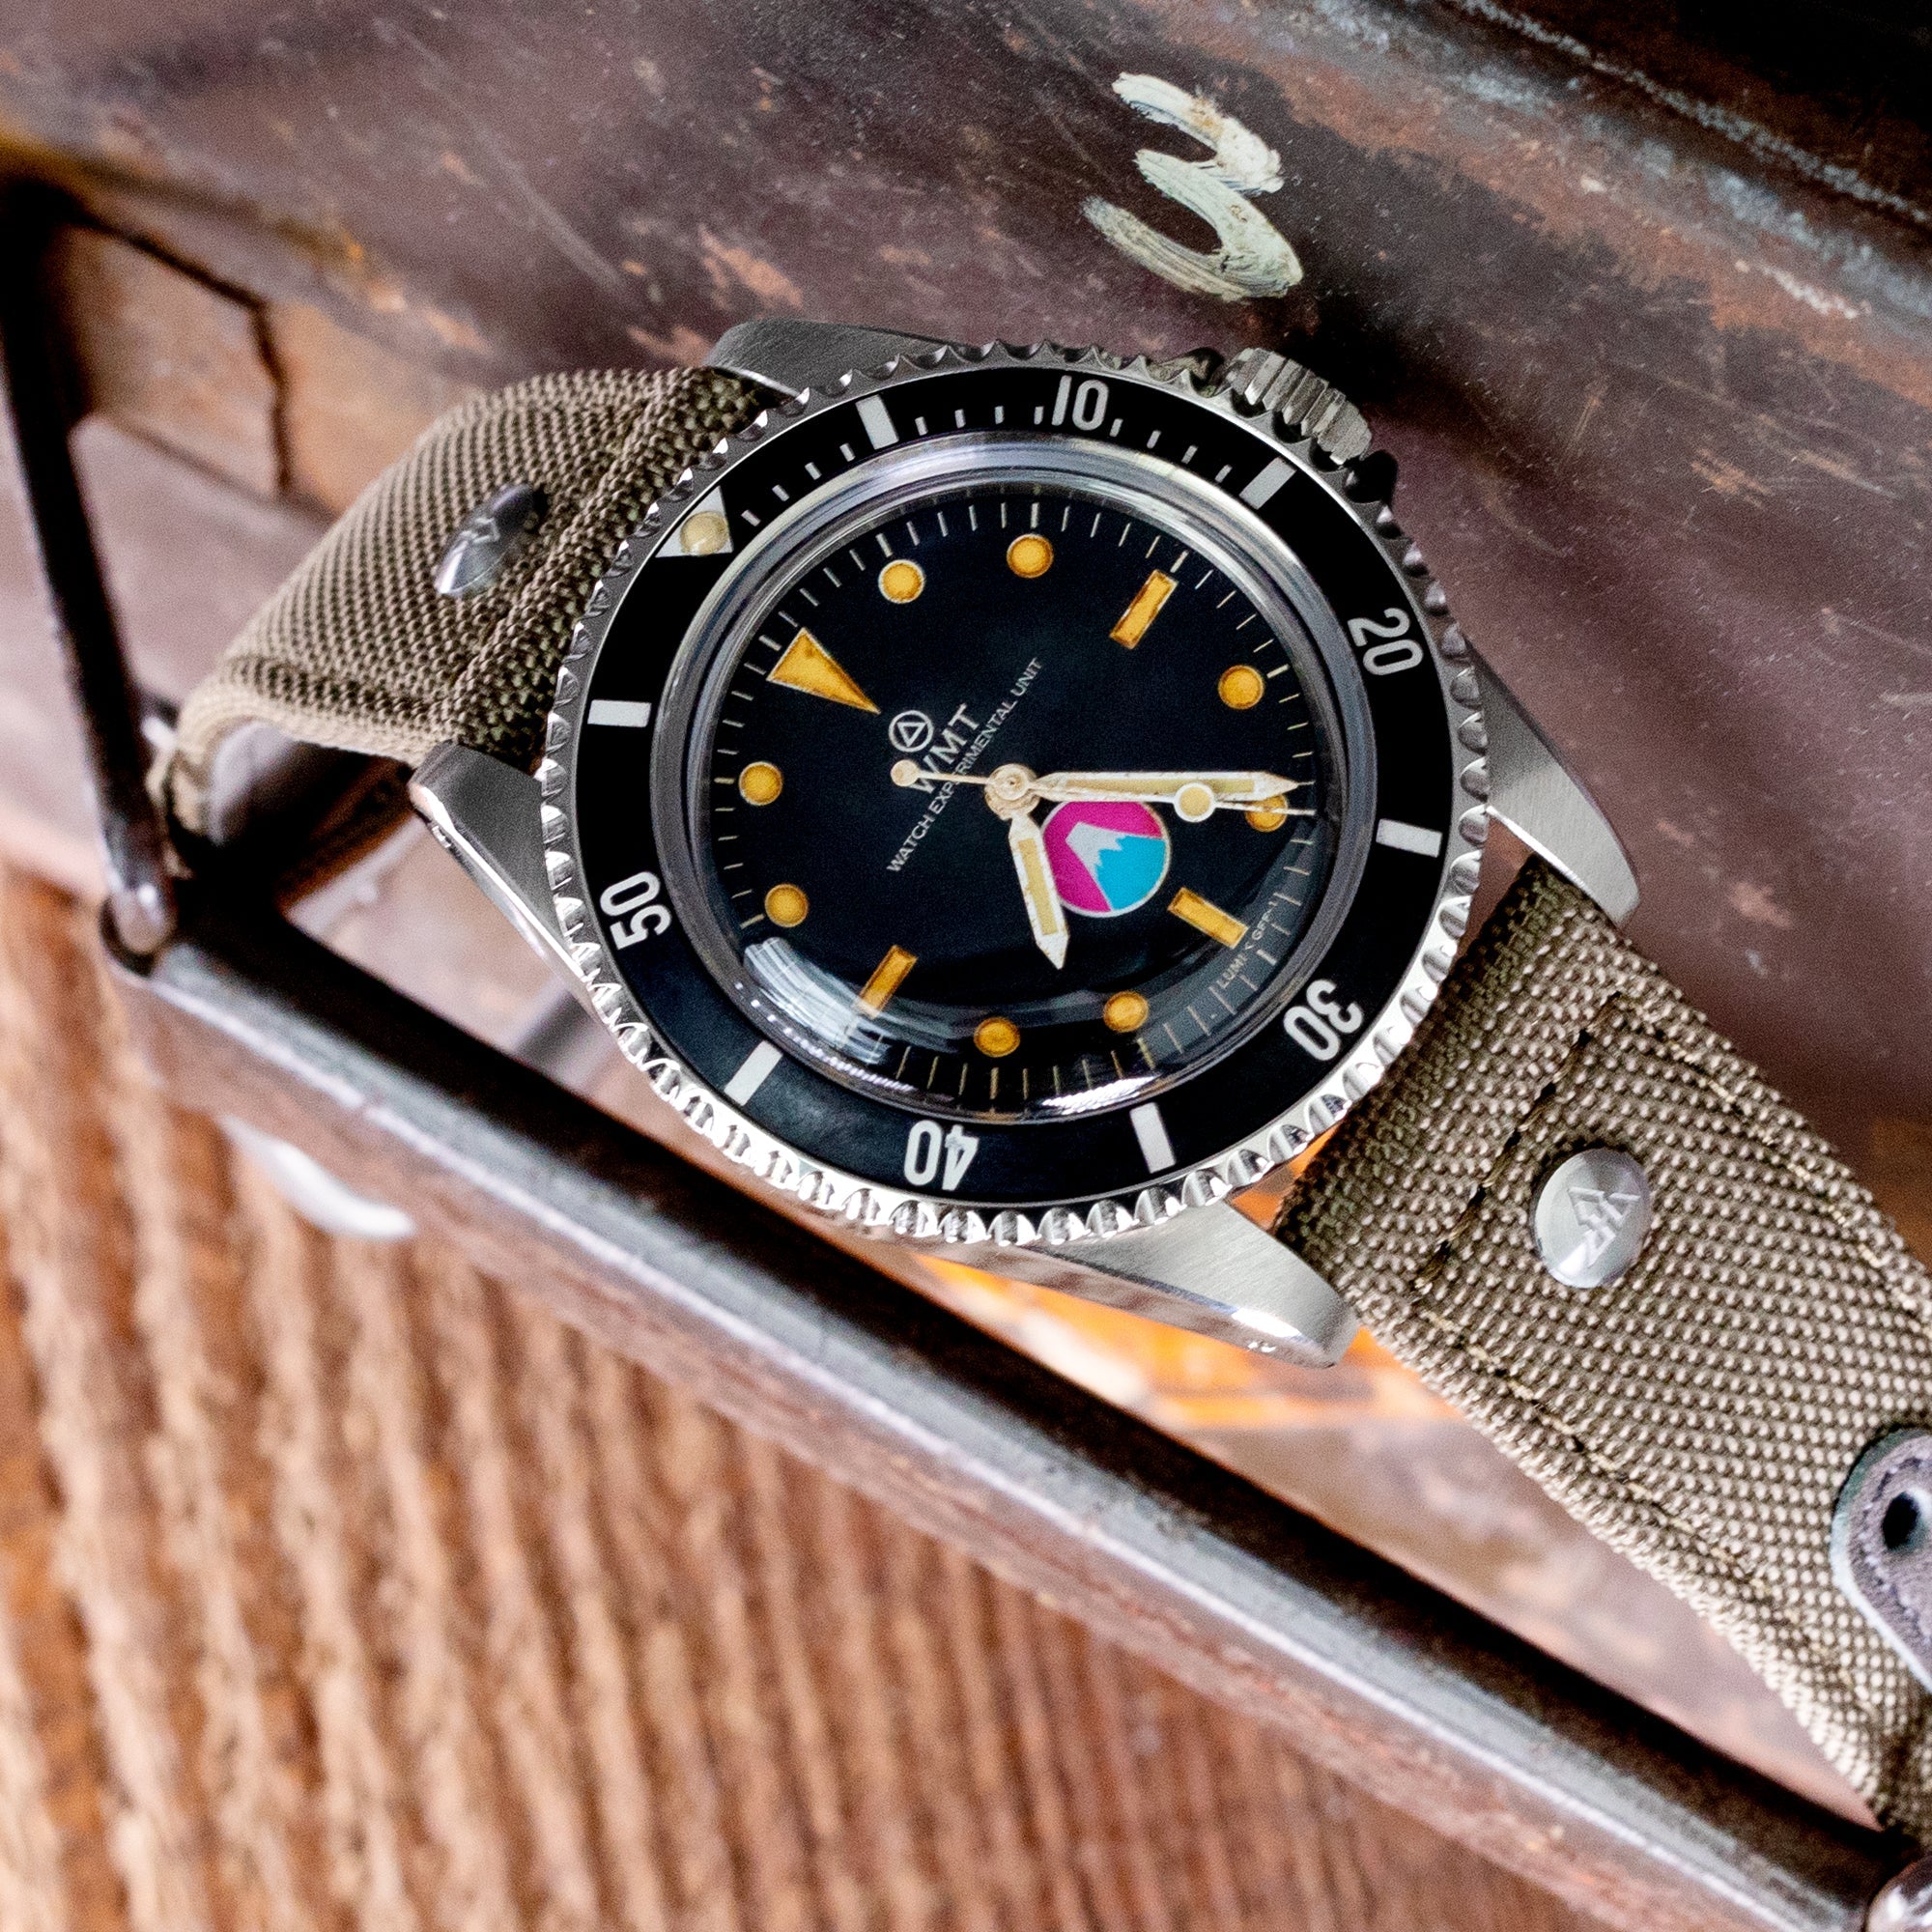 Royal Marine - Aged Fuji Version / ANZIANO Strapcode Watch Bands